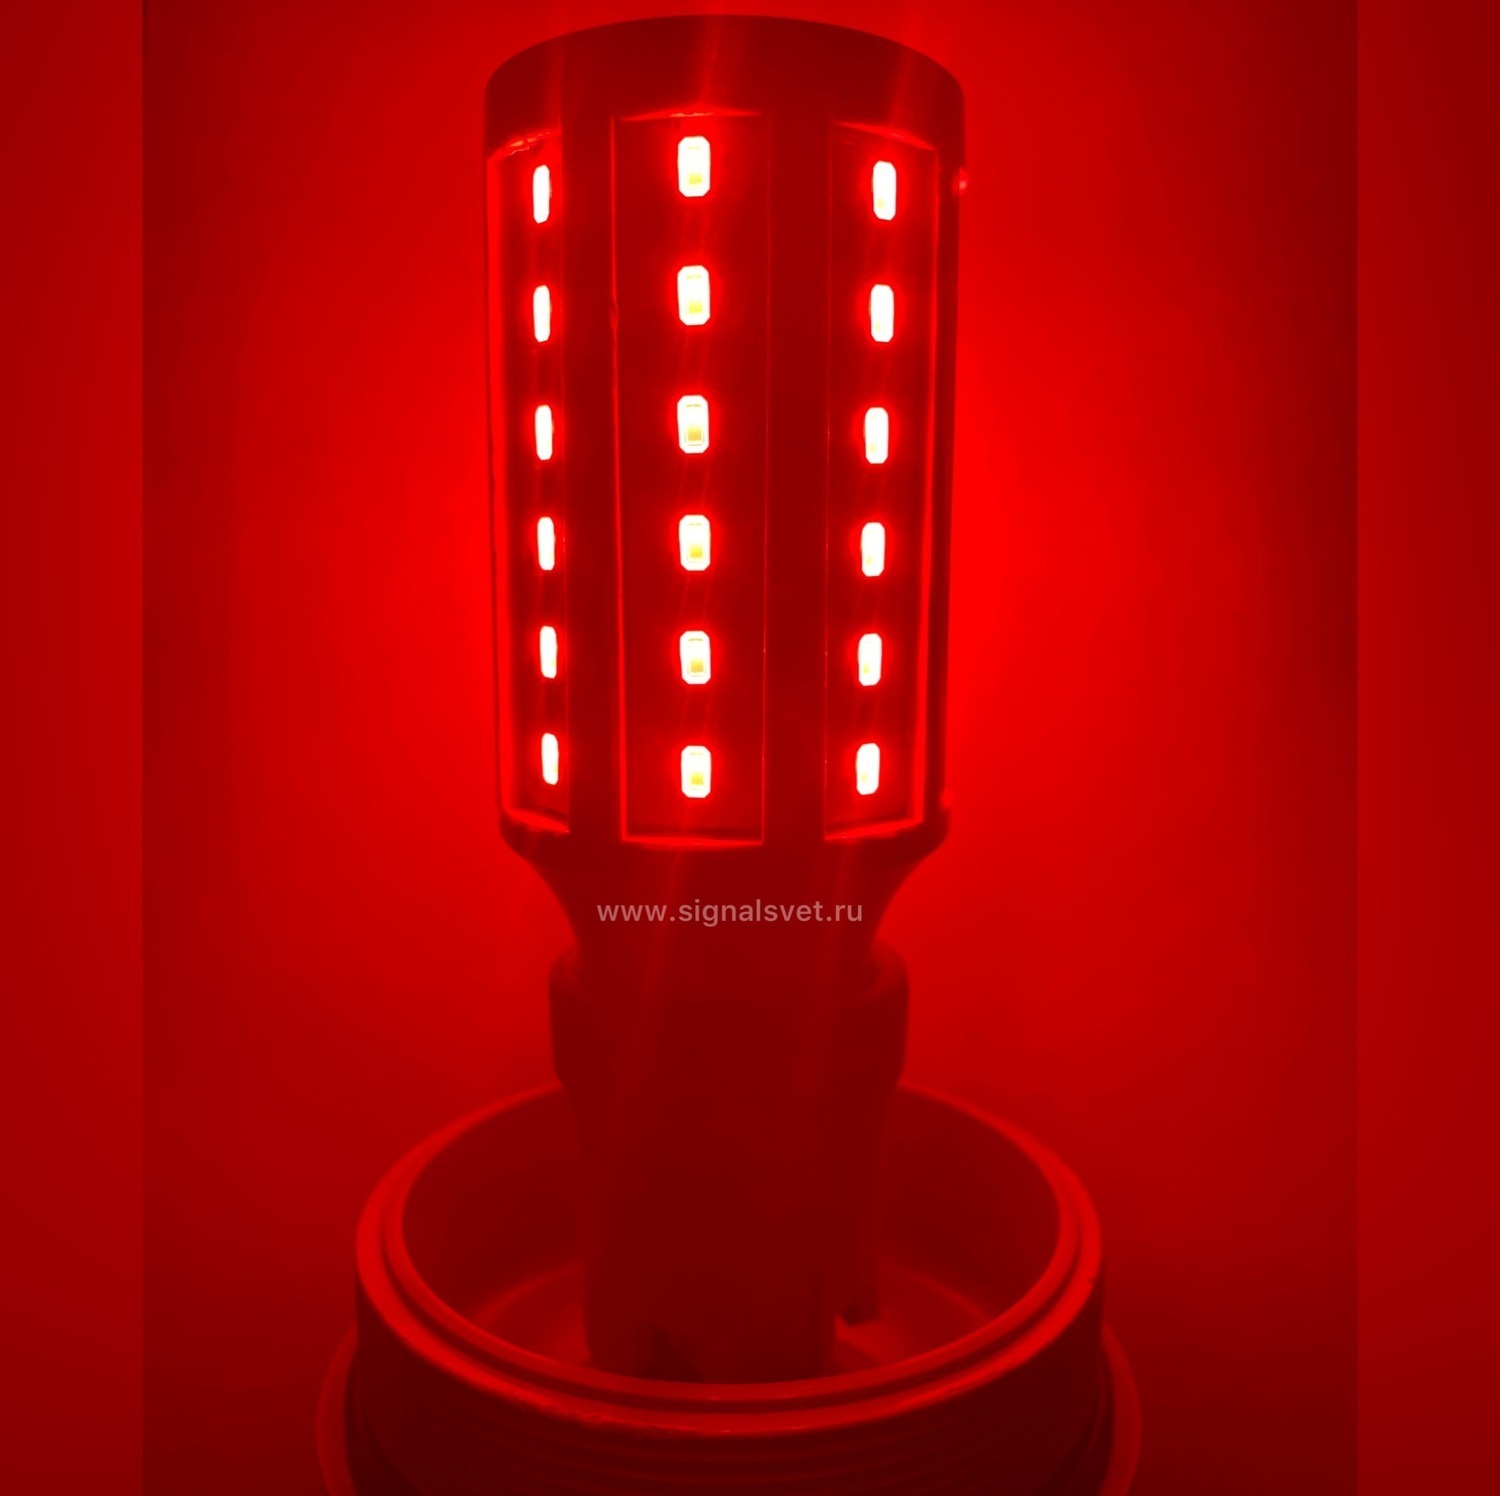 Лампа светодиодная ЛСД М 220В (85-275V, 35 Кд, 6 Вт) 
для ЗОМ и СДЗО-05. Красная